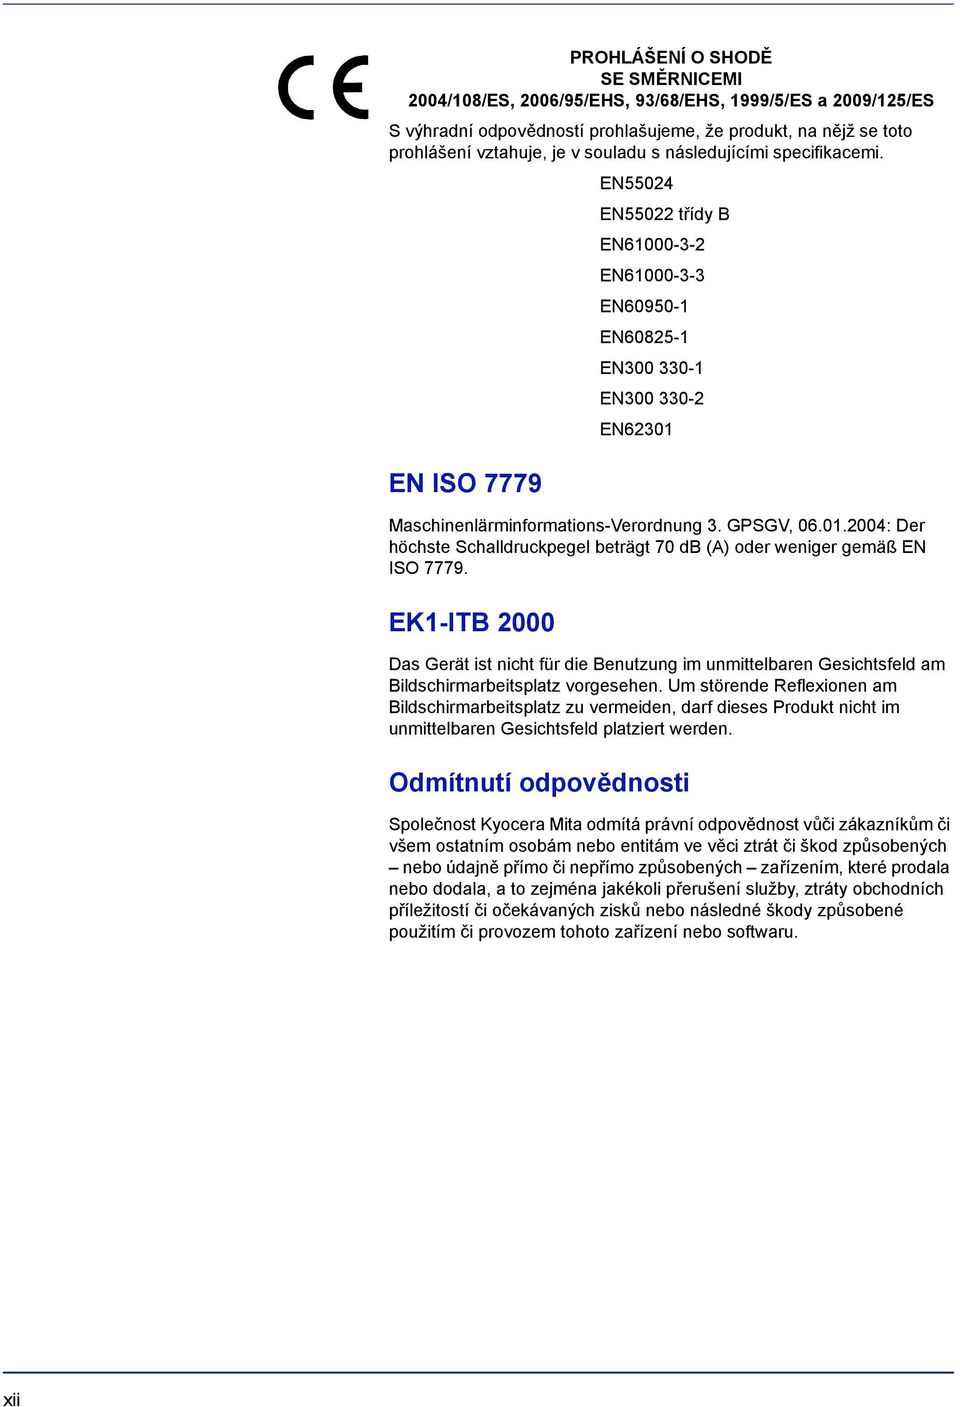 EN ISO 7779 Maschinenlärminformations-Verordnung 3. GPSGV, 06.01.2004: Der höchste Schalldruckpegel beträgt 70 db (A) oder weniger gemäß EN ISO 7779.